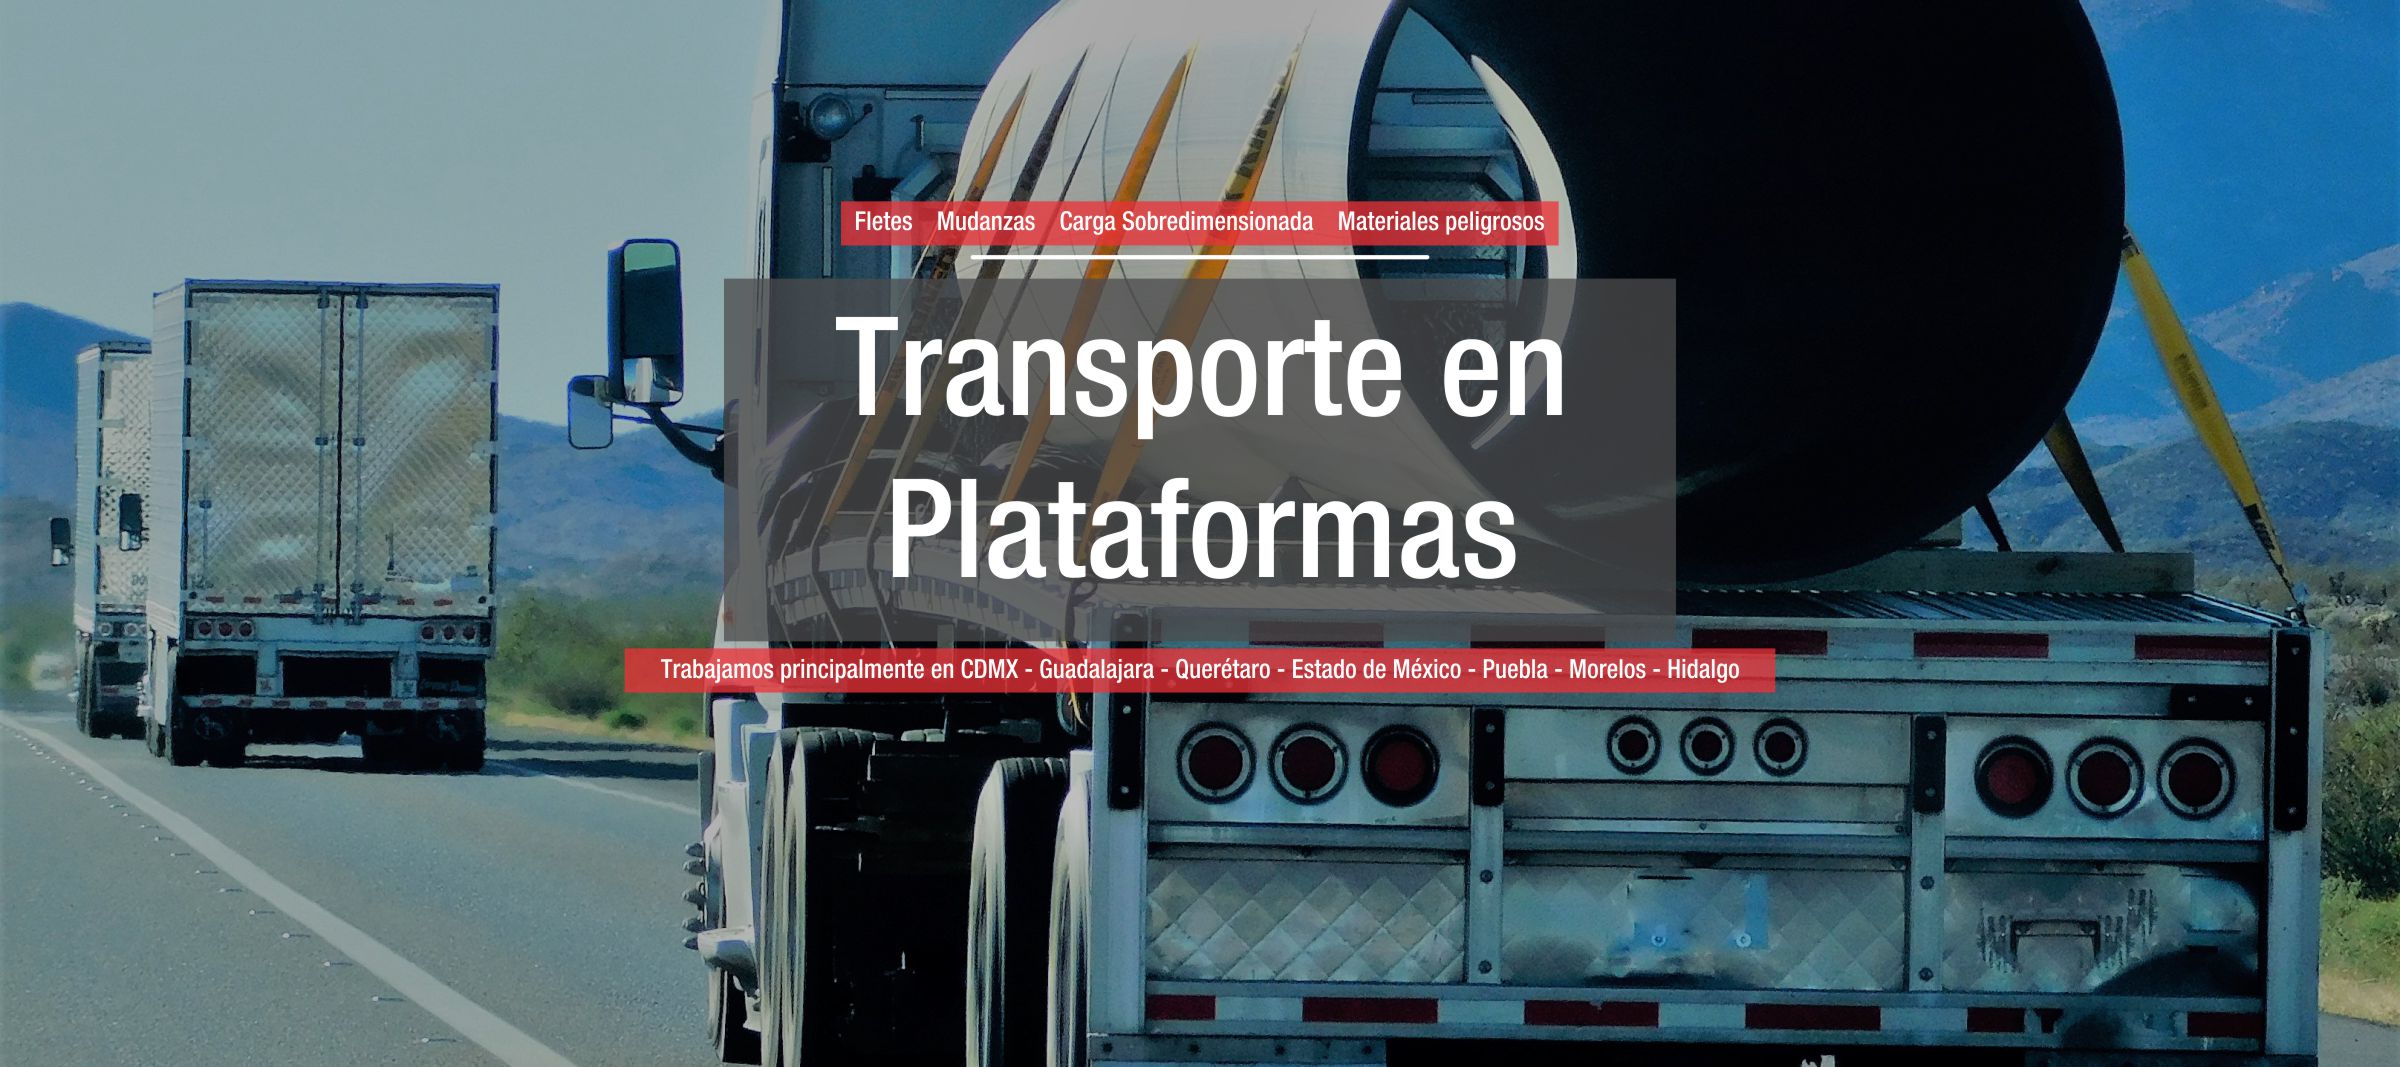 Transporte en Plataformas